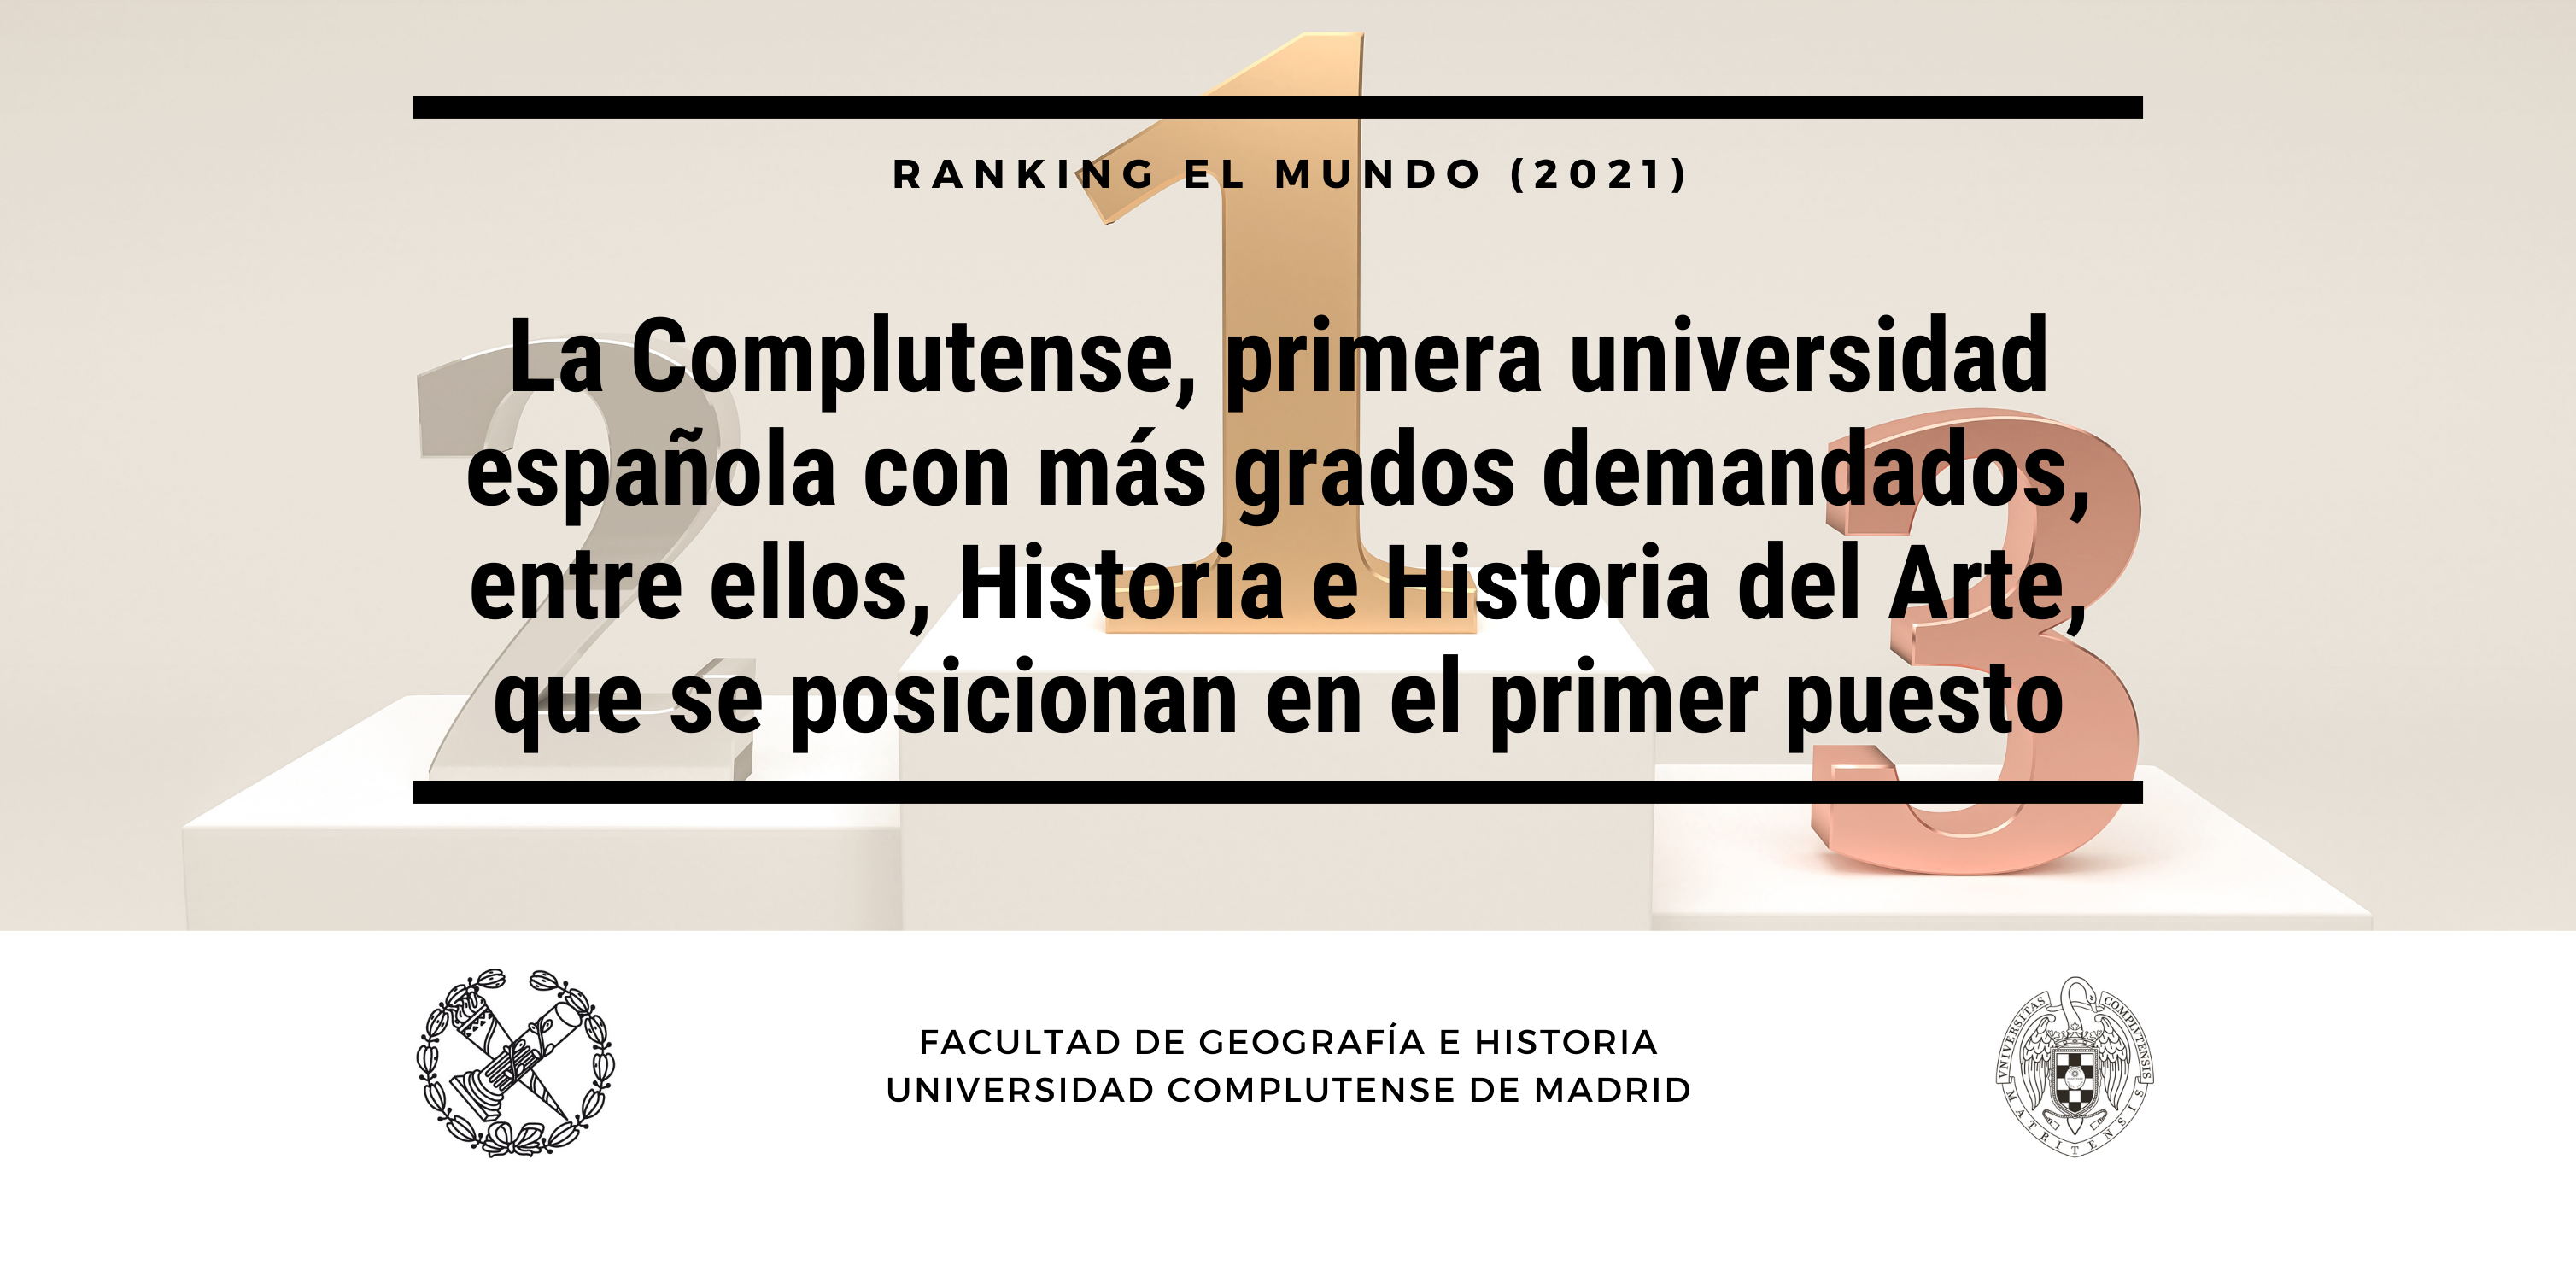 La Complutense, primera universidad española según ranking 50 carreras El Mundo